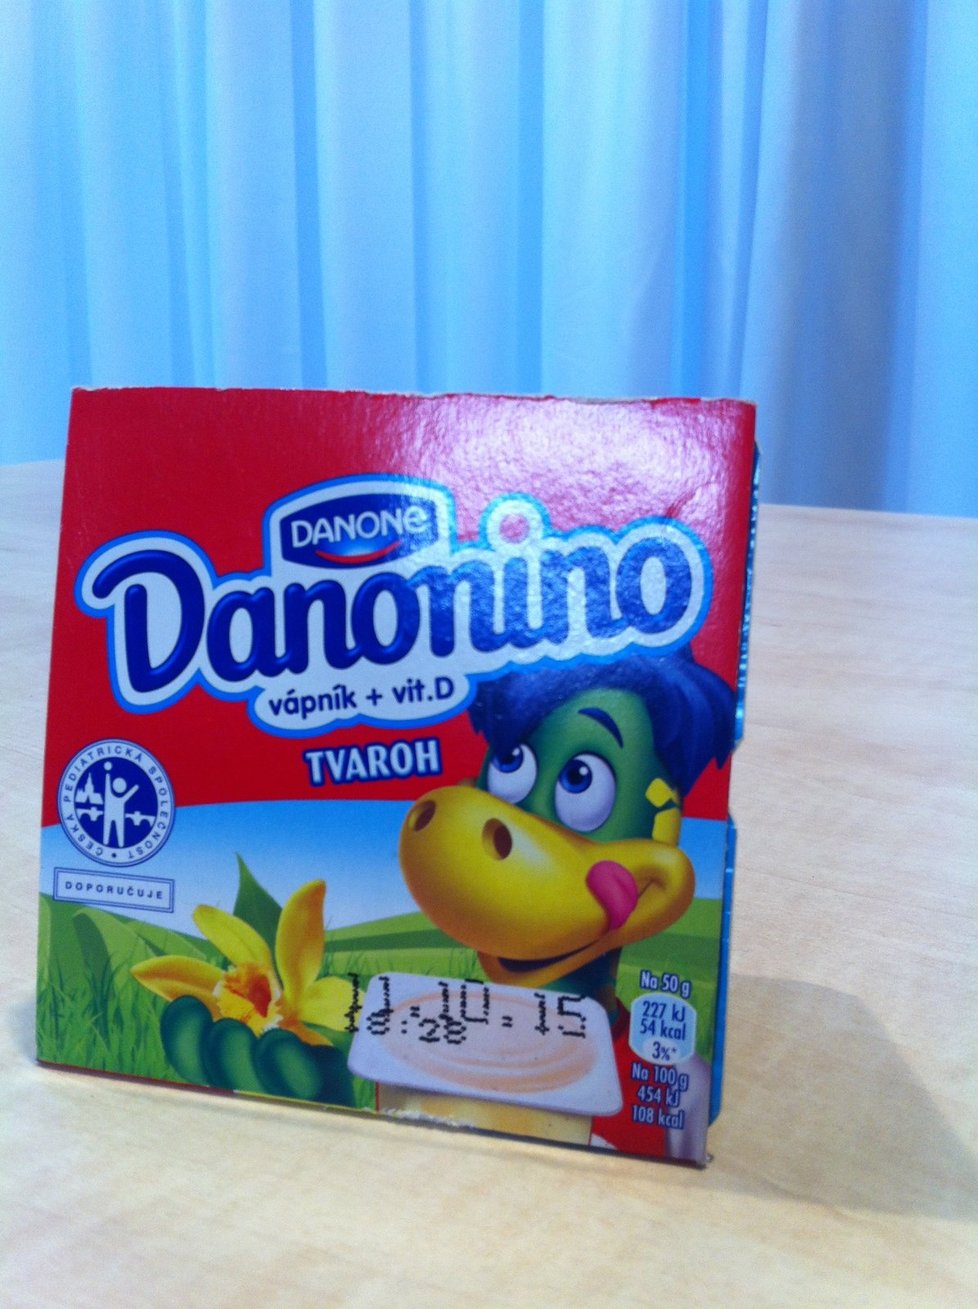 Danonino